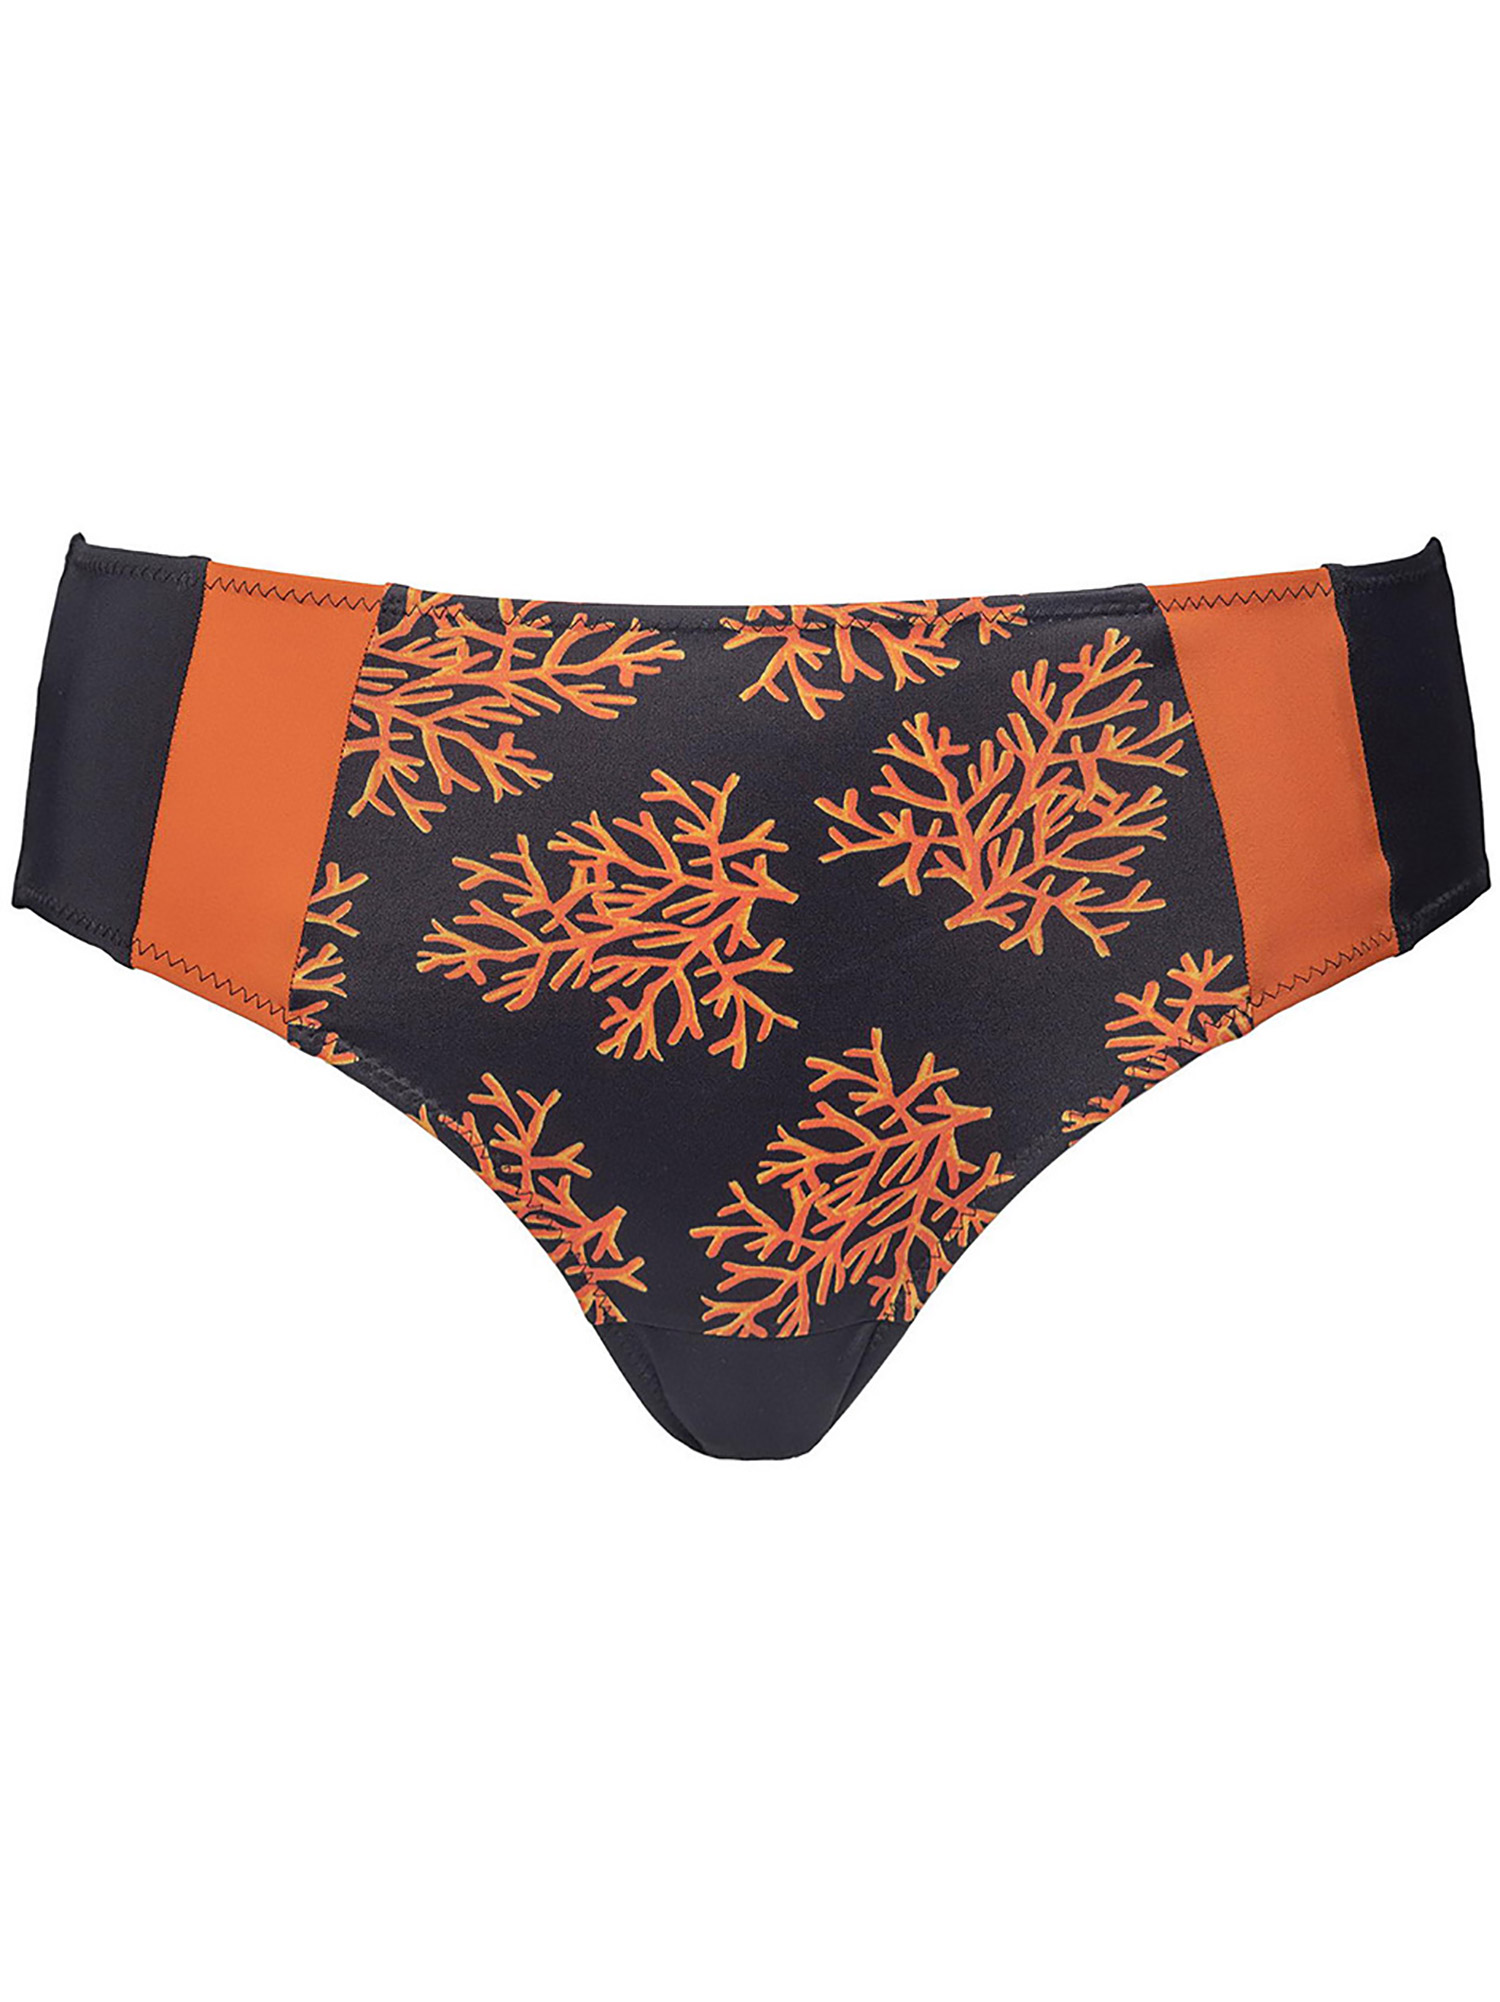 Tai - Sort og orange bikini trusse med smart print fra Plaisir